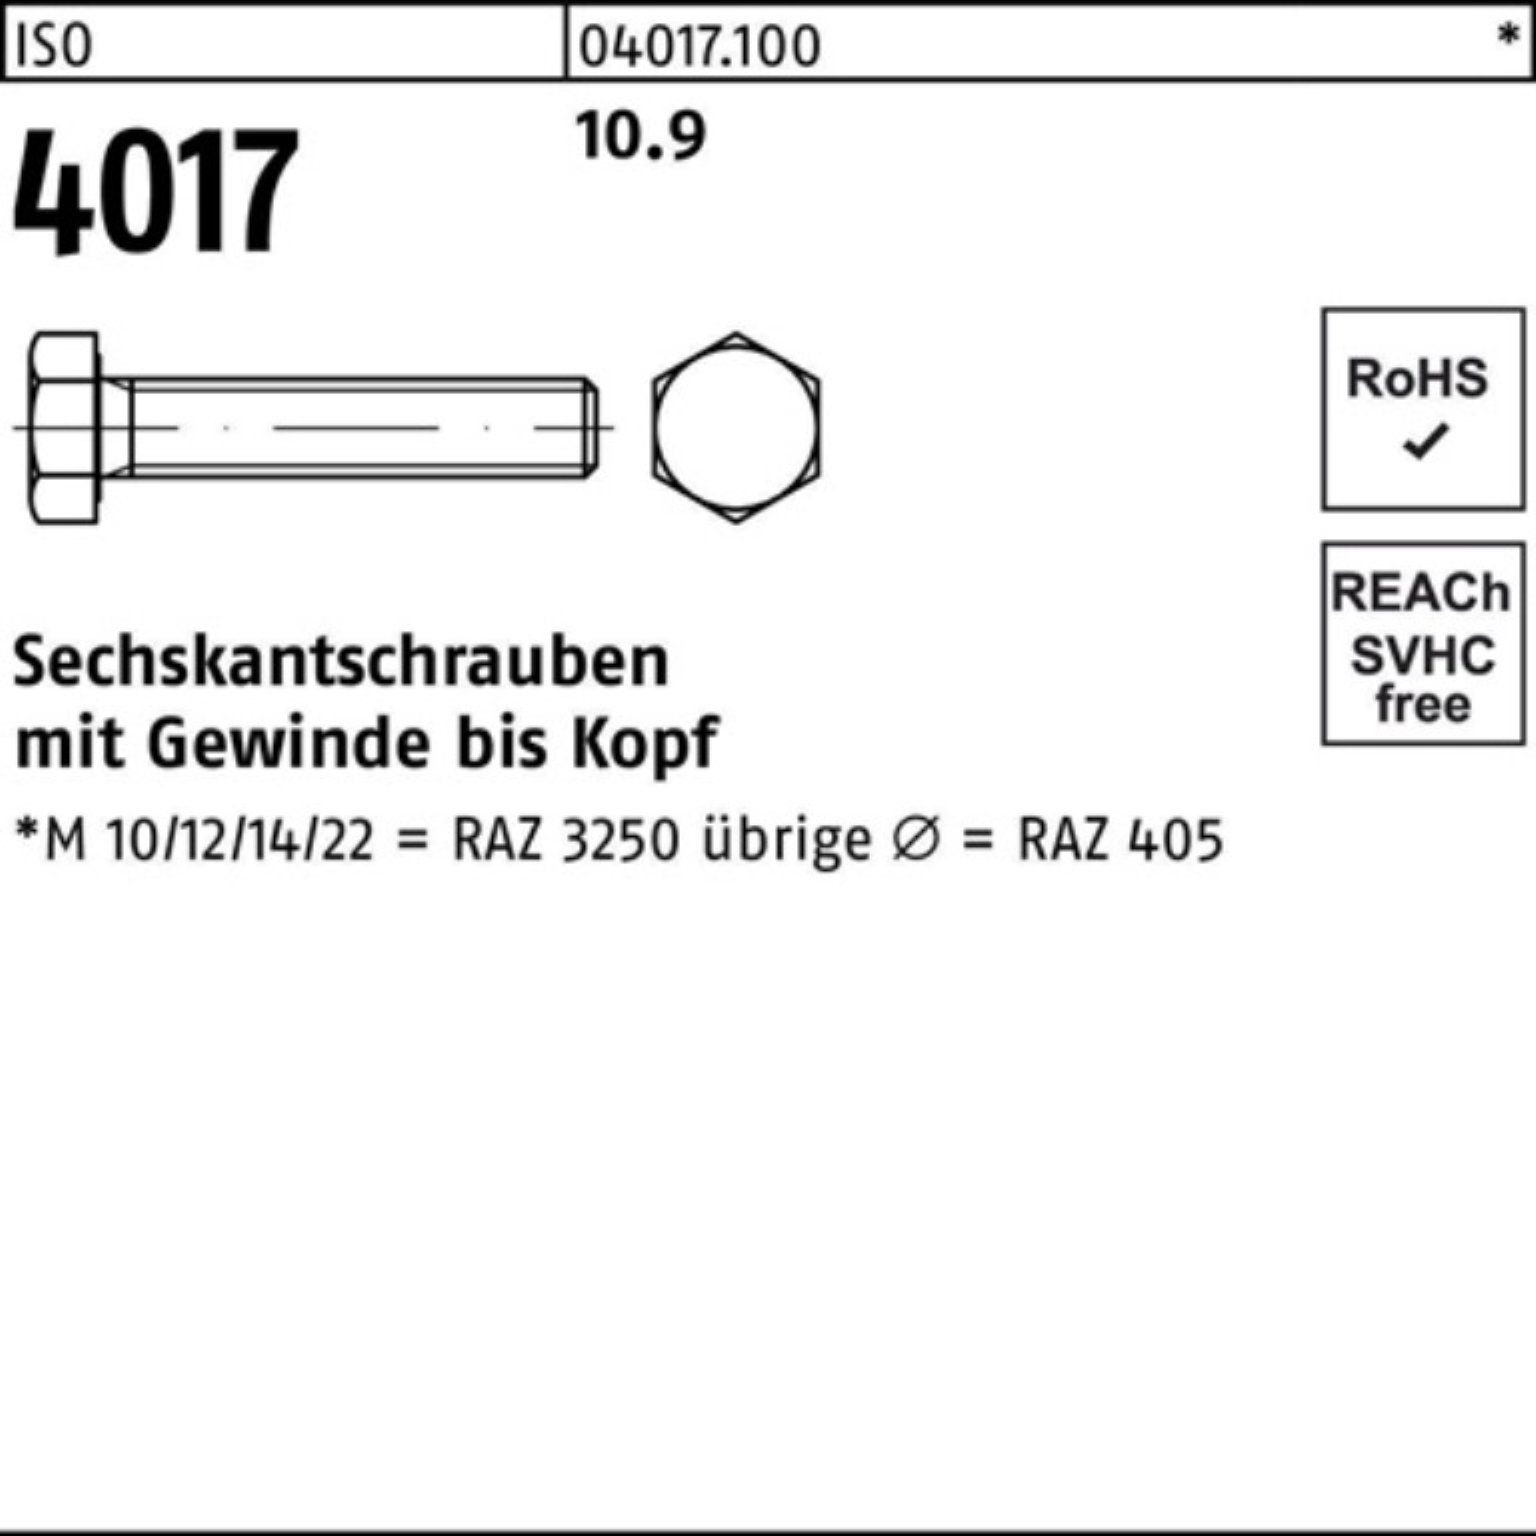 Bufab Sechskantschraube 100er 10.9 VG 110 40 4017 ISO 1 Sechskantschraube M30x ISO Stück Pack